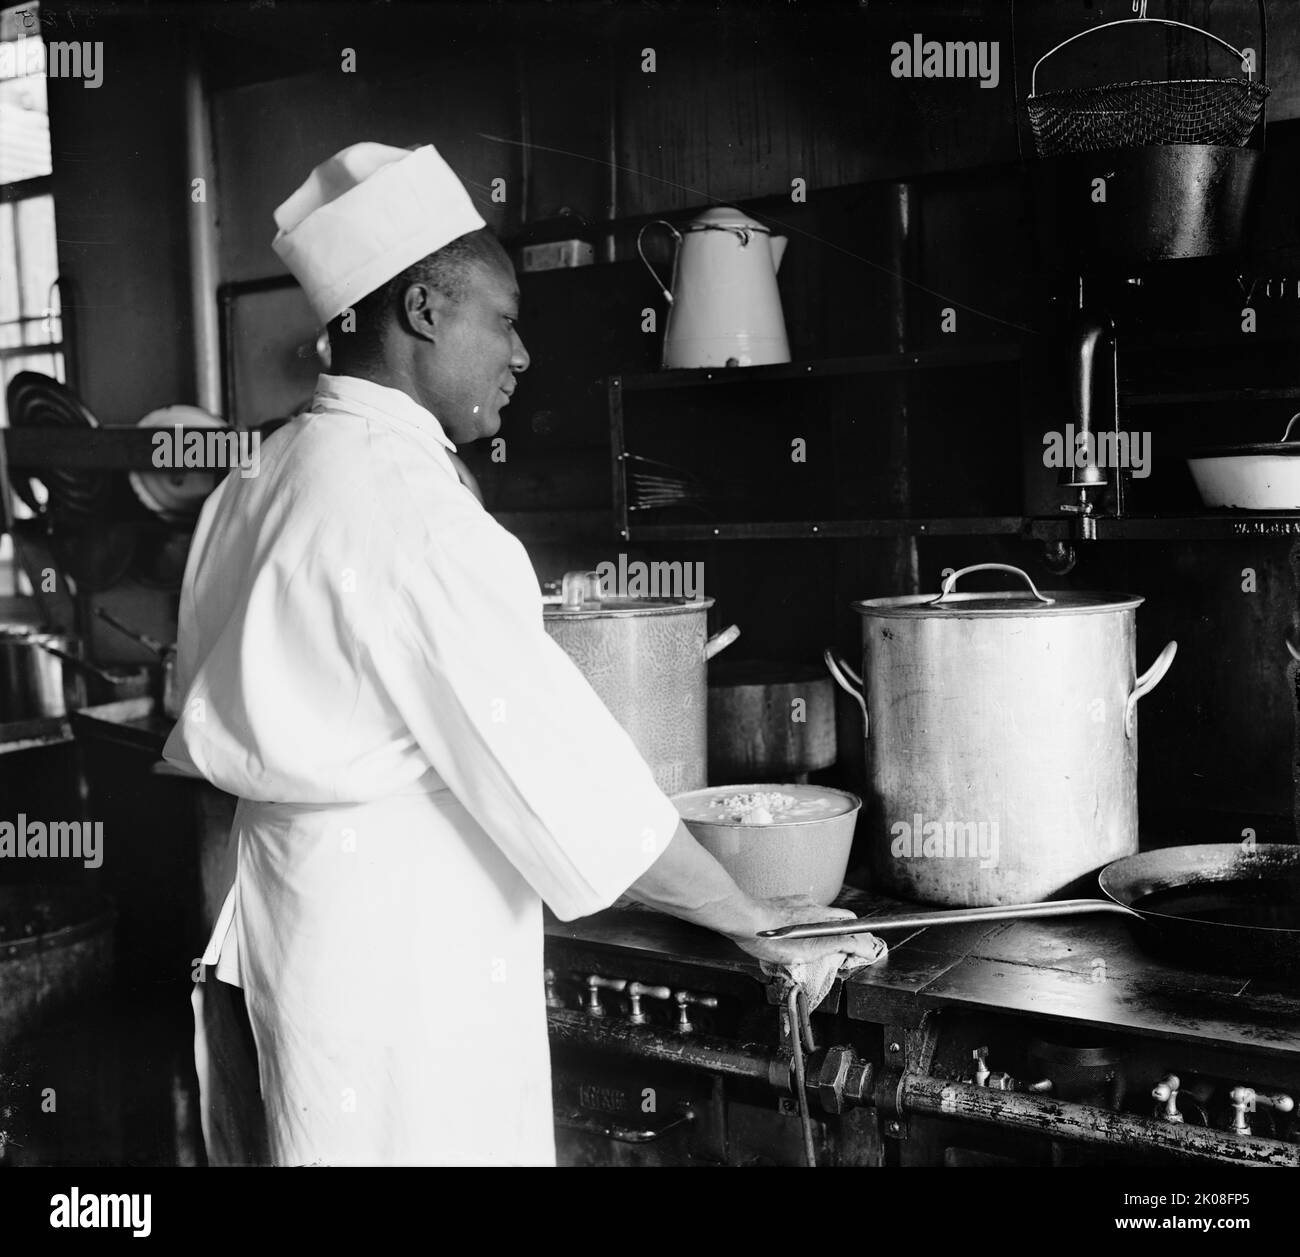 Blue Triangle Chef C.P. Harris, zwischen 1910 und 1920. [Afroamerikanischer Koch in der Küche]. Stockfoto